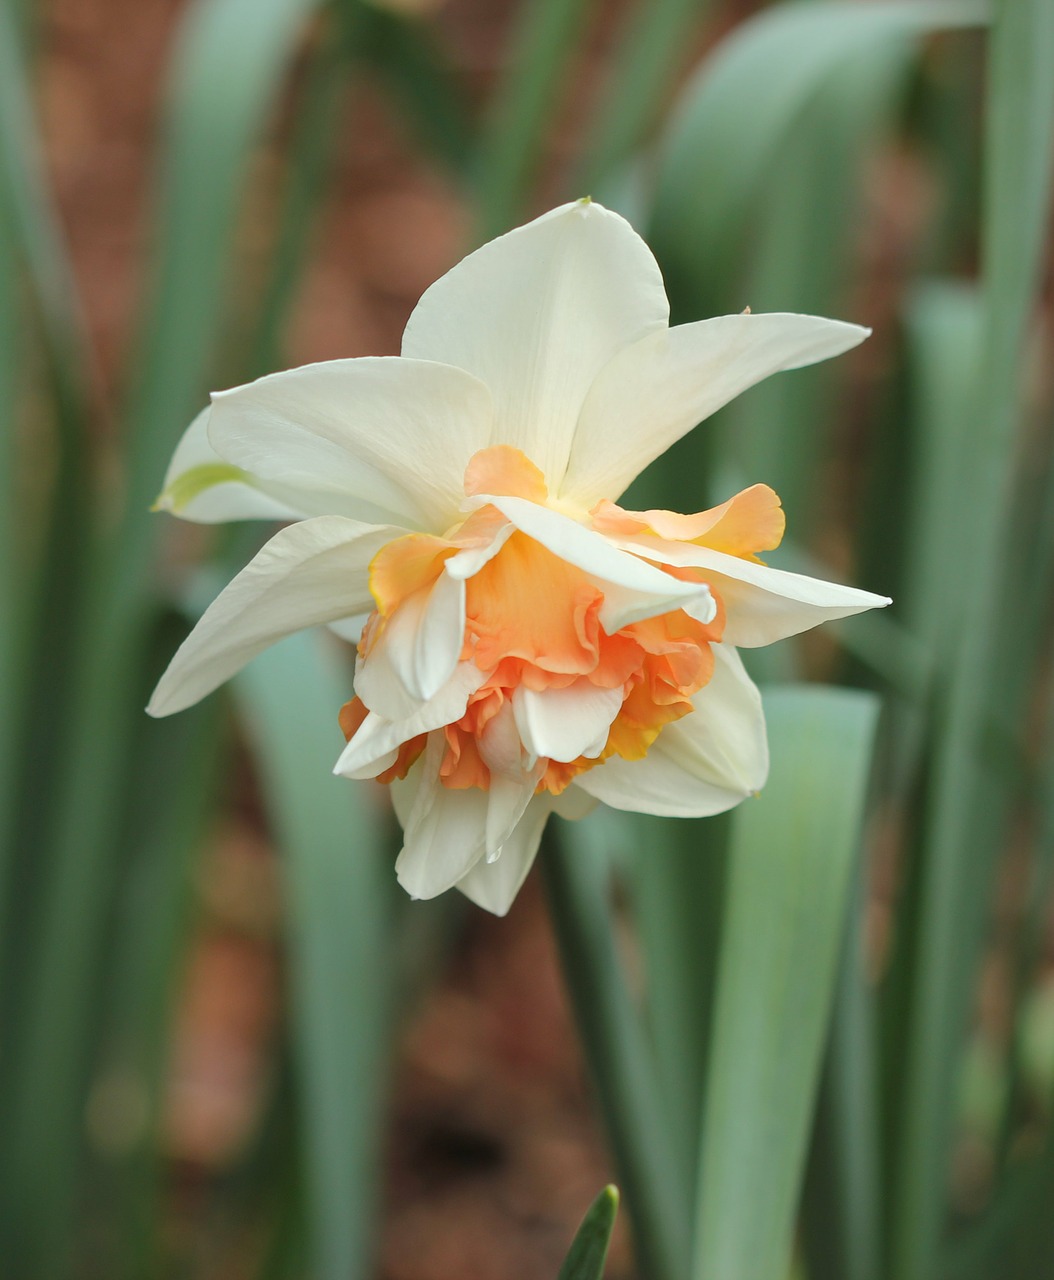 daffodil bicolor narcissus free photo